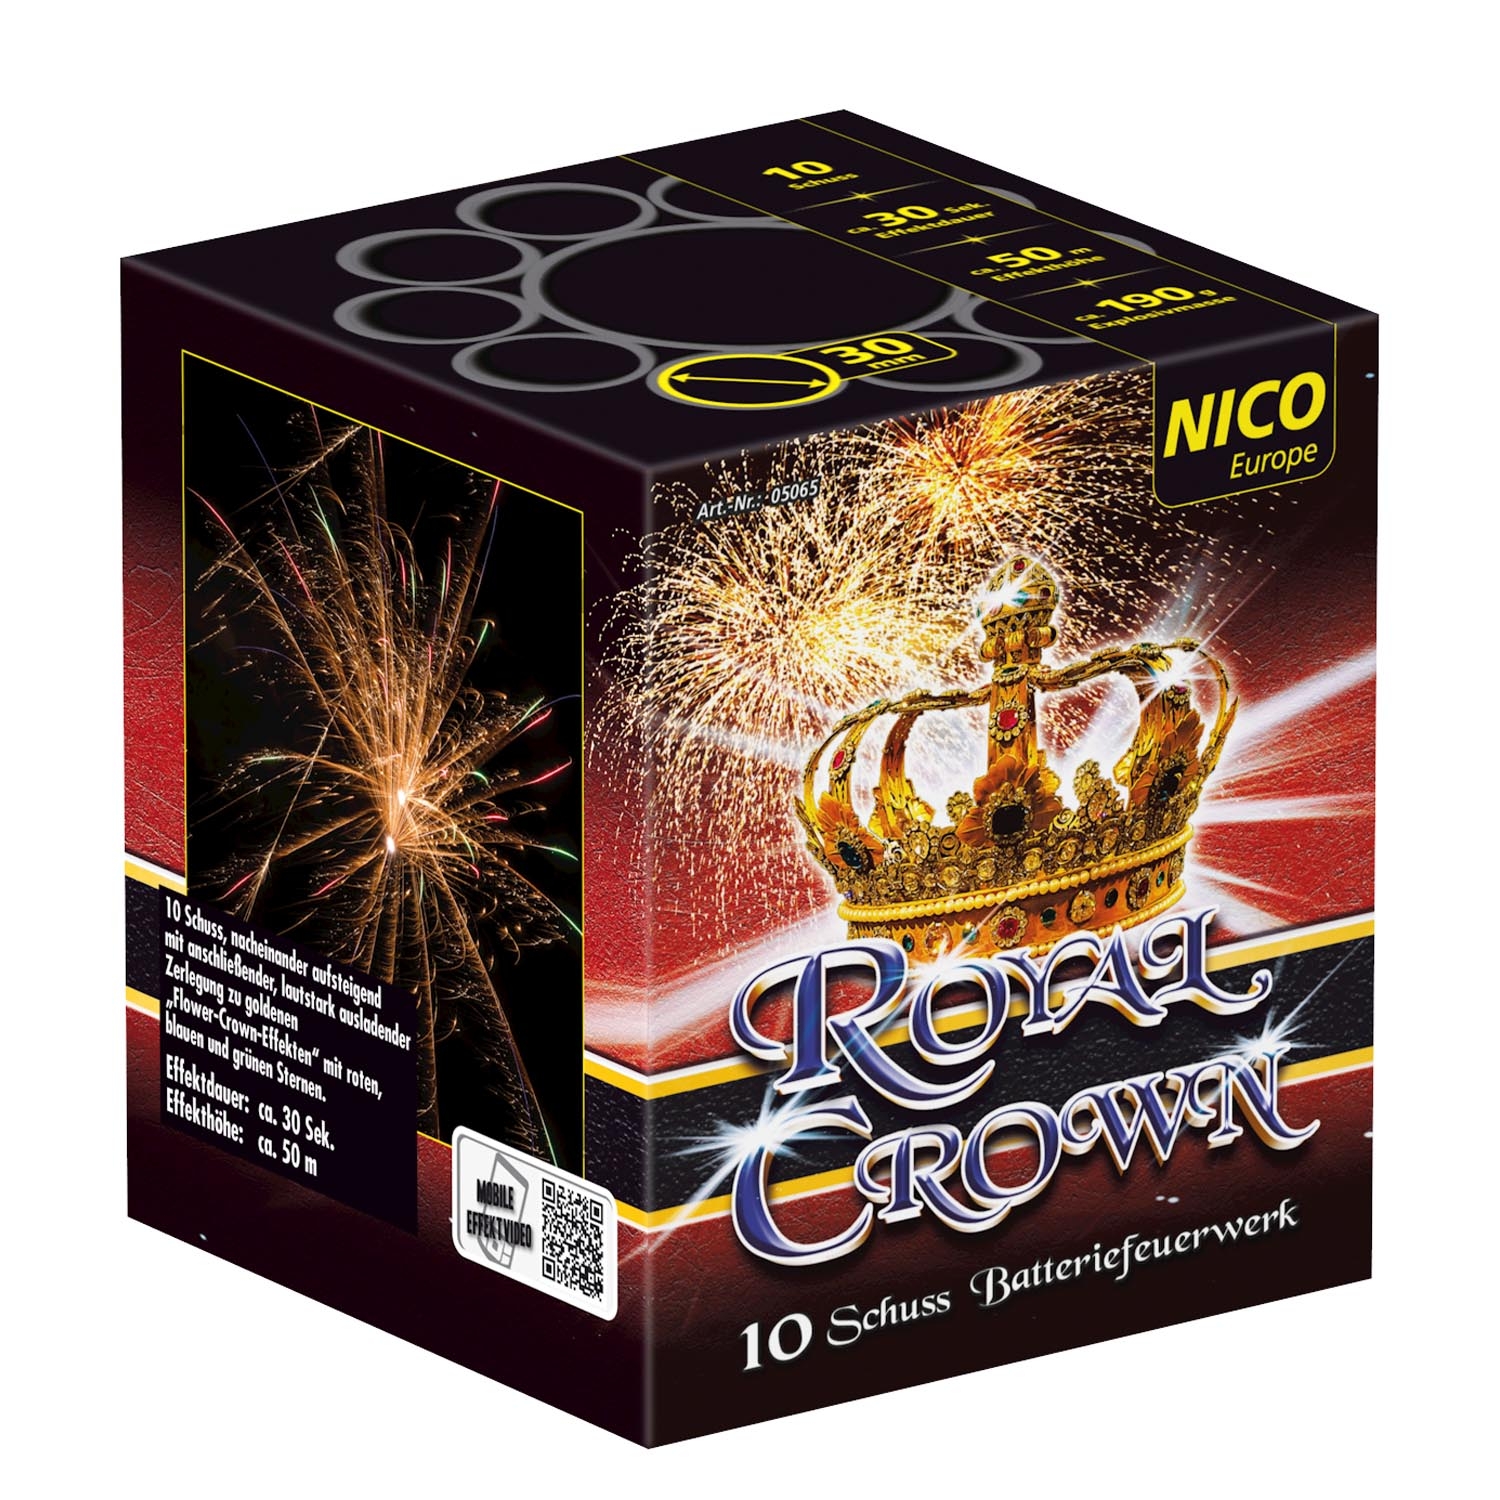 Royal Crown -  10 Schuss Batterie